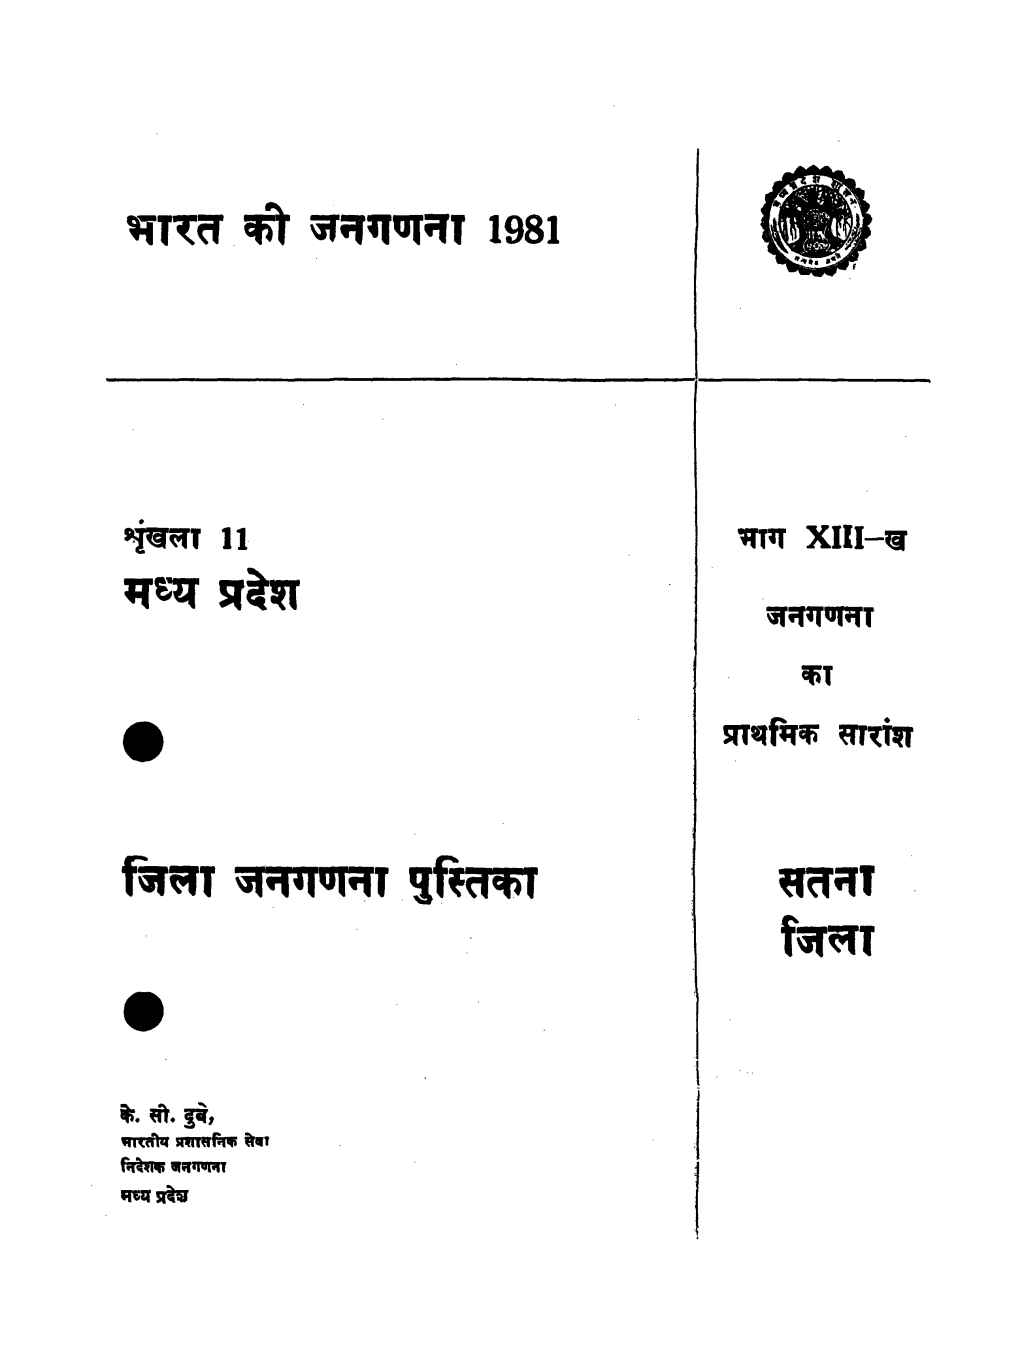 District Census Handbook, Satna, Part XIII-B, Series-11